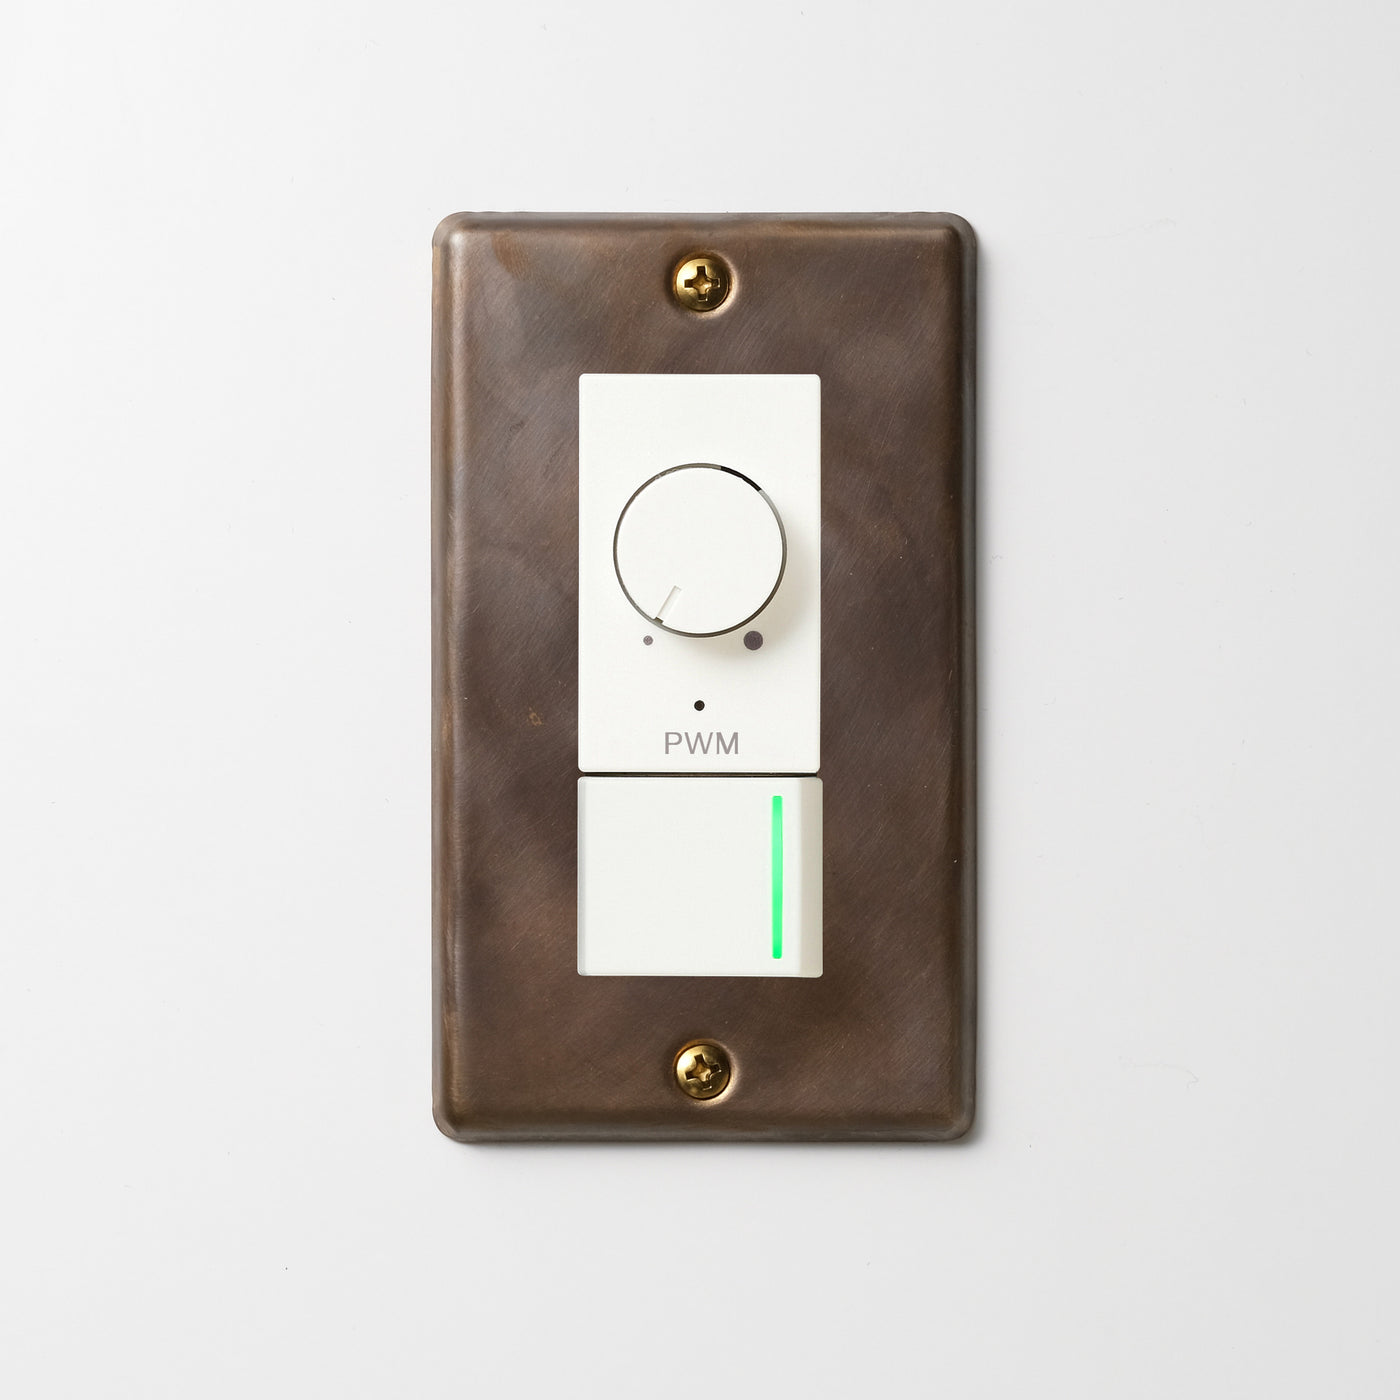 真鍮（燻し） プレート <br>+ NK PWM制御方式(1ch)ライトコントロール＋片切、3路ガイドランプ（グリーン）スイッチ　 ホワイト